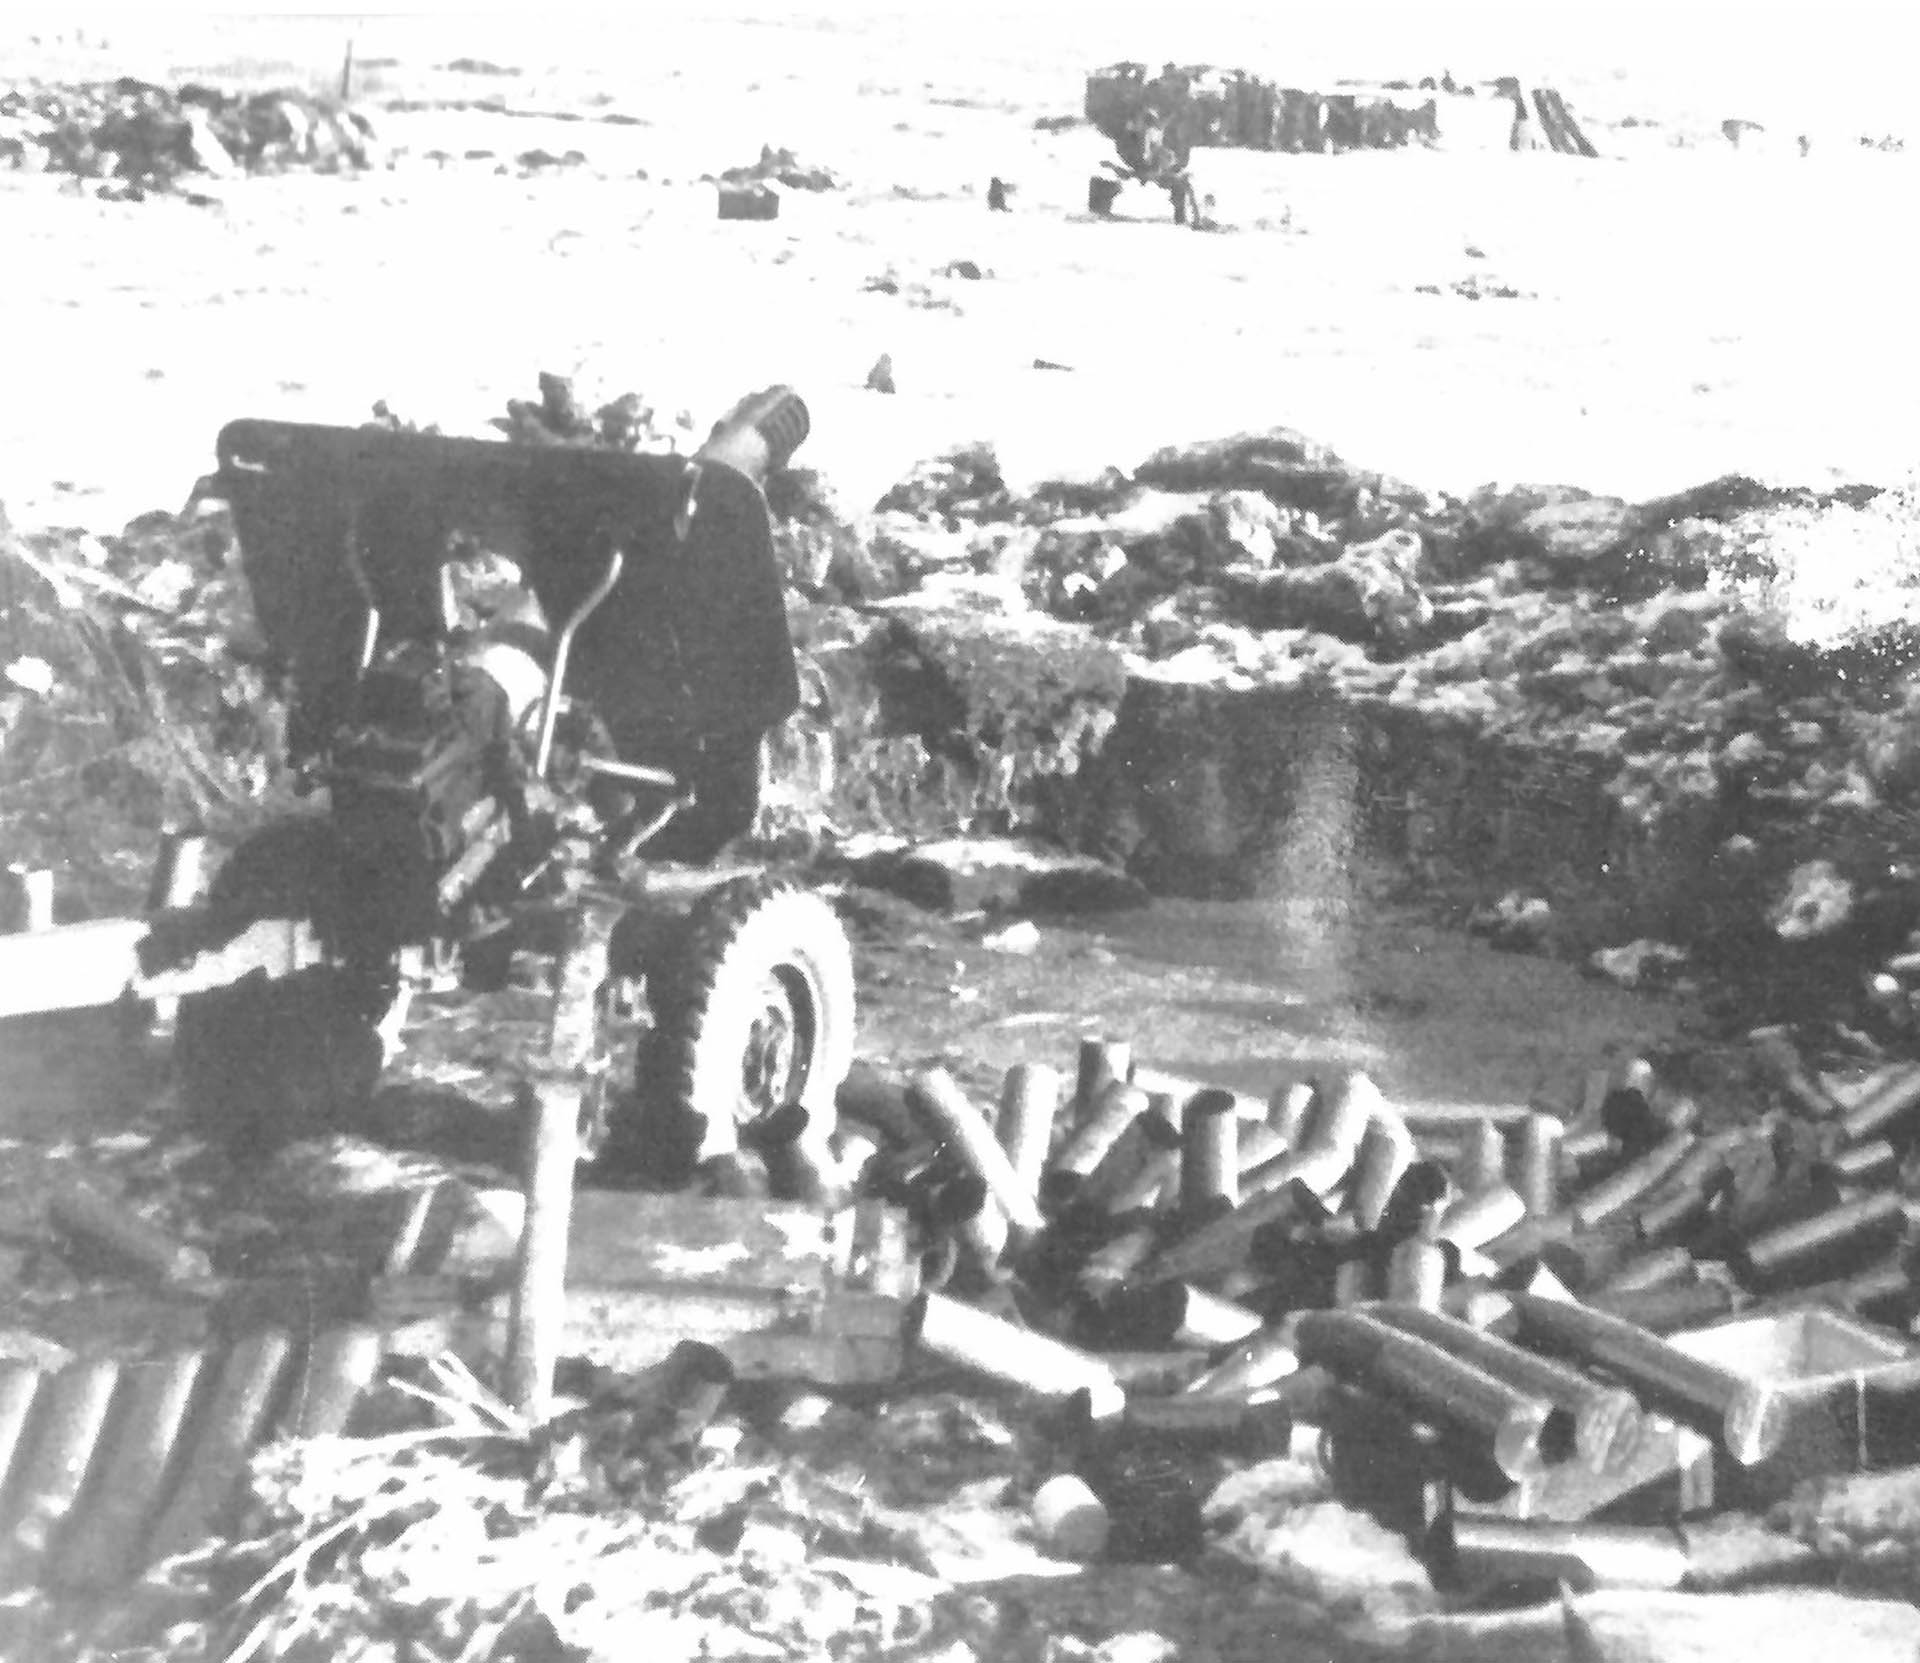 La artillería argentina demoró el final de la contienda, manteniendo a raya a los ingleses cerca de Puerto Argentino. Finalmente, la escasez de municiones hizo que esa barrera también fuera sobrepasada